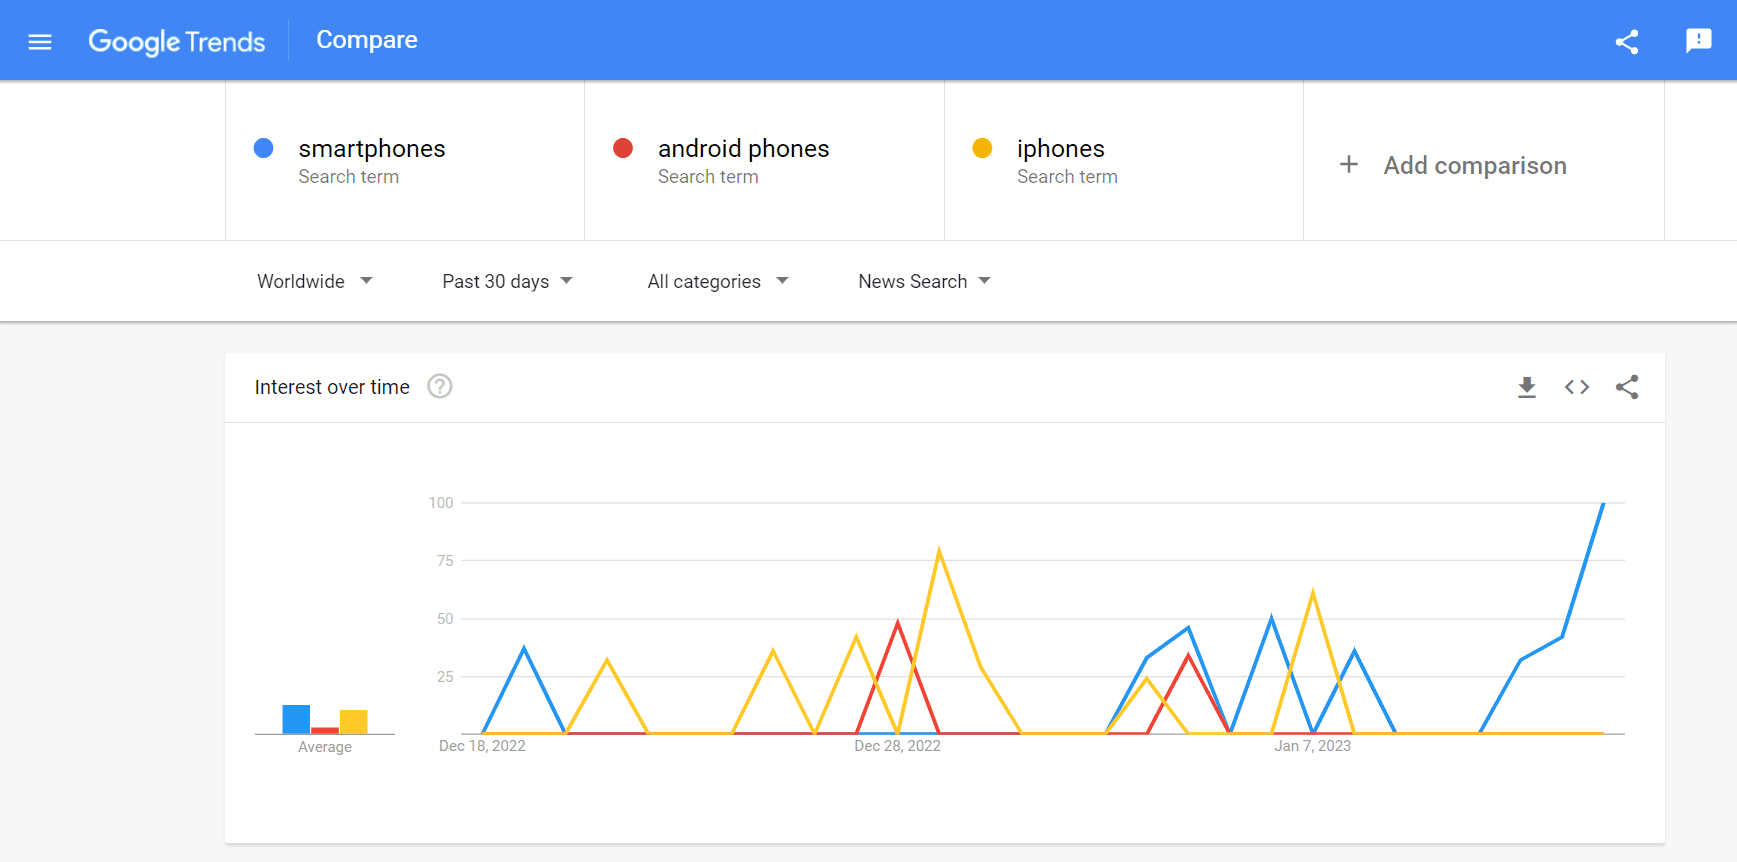 為新聞搜索過濾的三個關鍵字的谷歌搜索趨勢比較